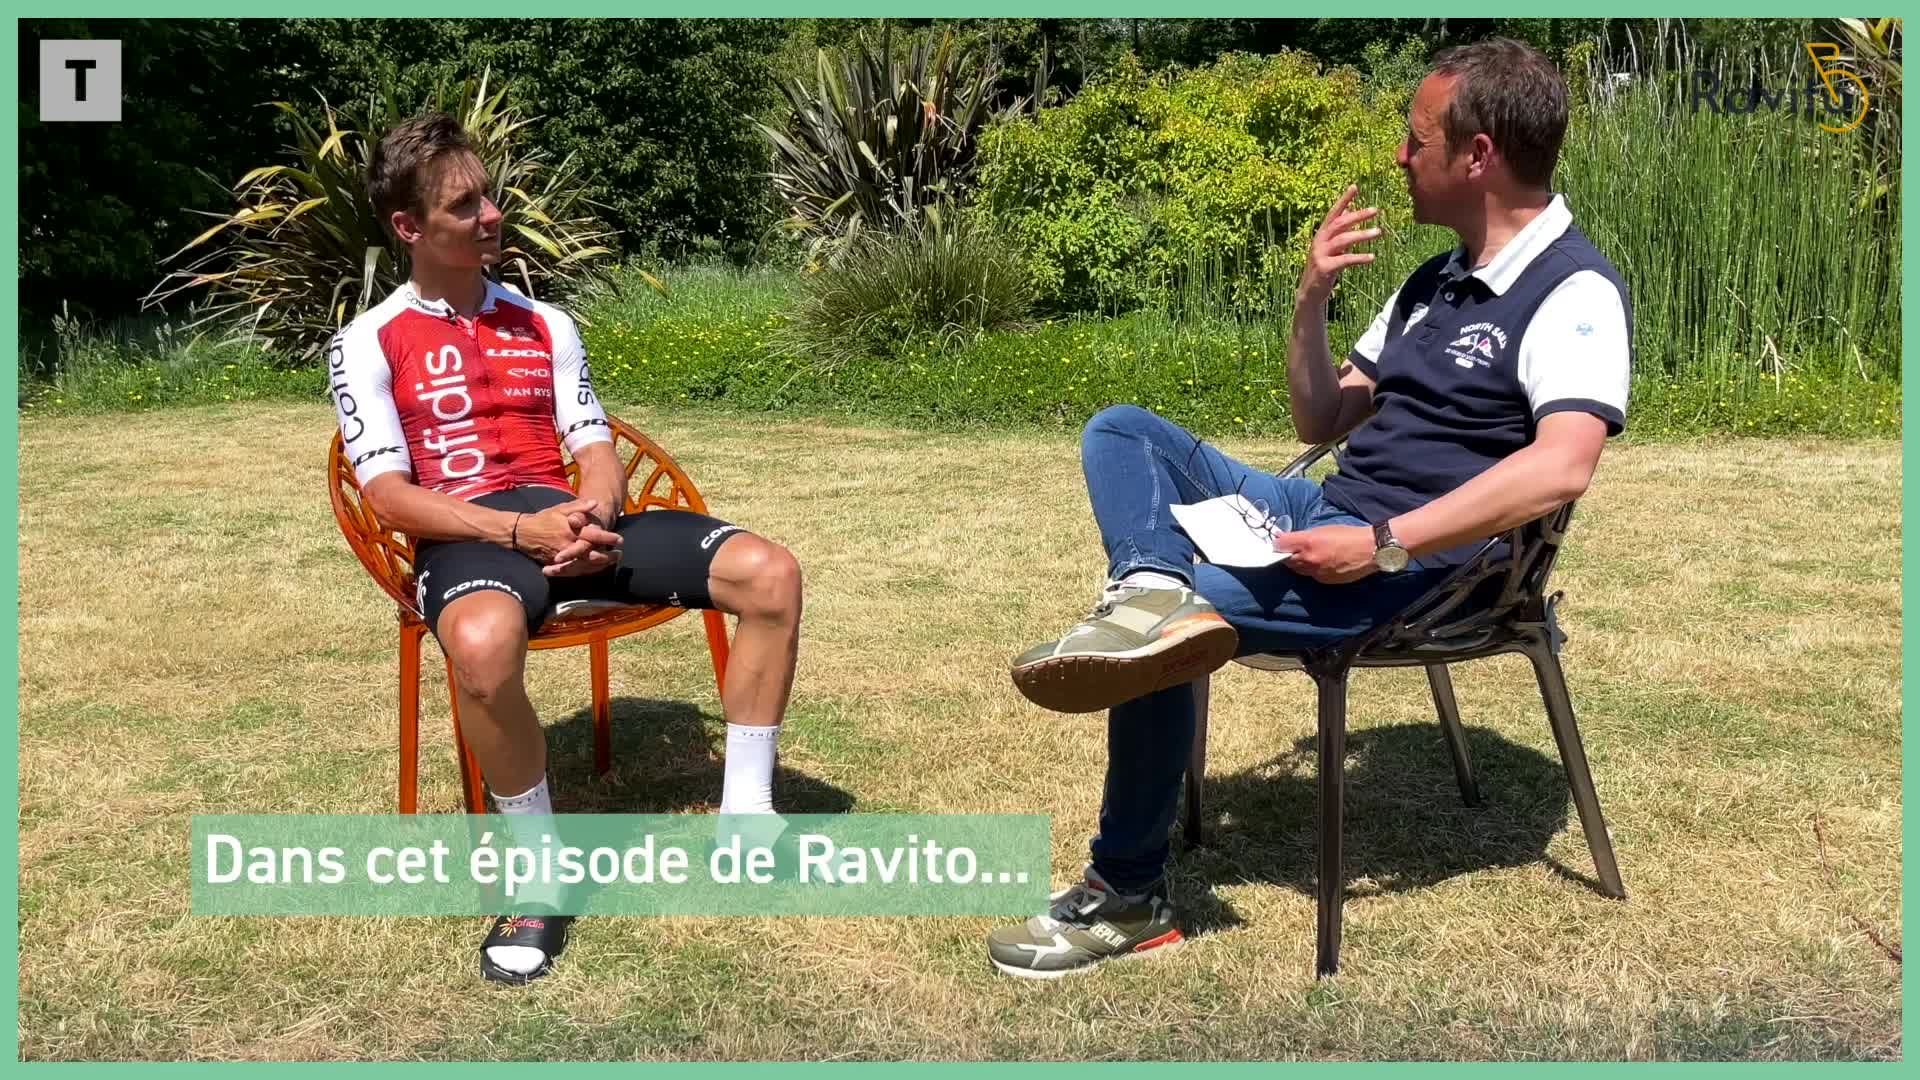 Cyclisme. Ravito #67 : Bryan Coquard attend son Tour